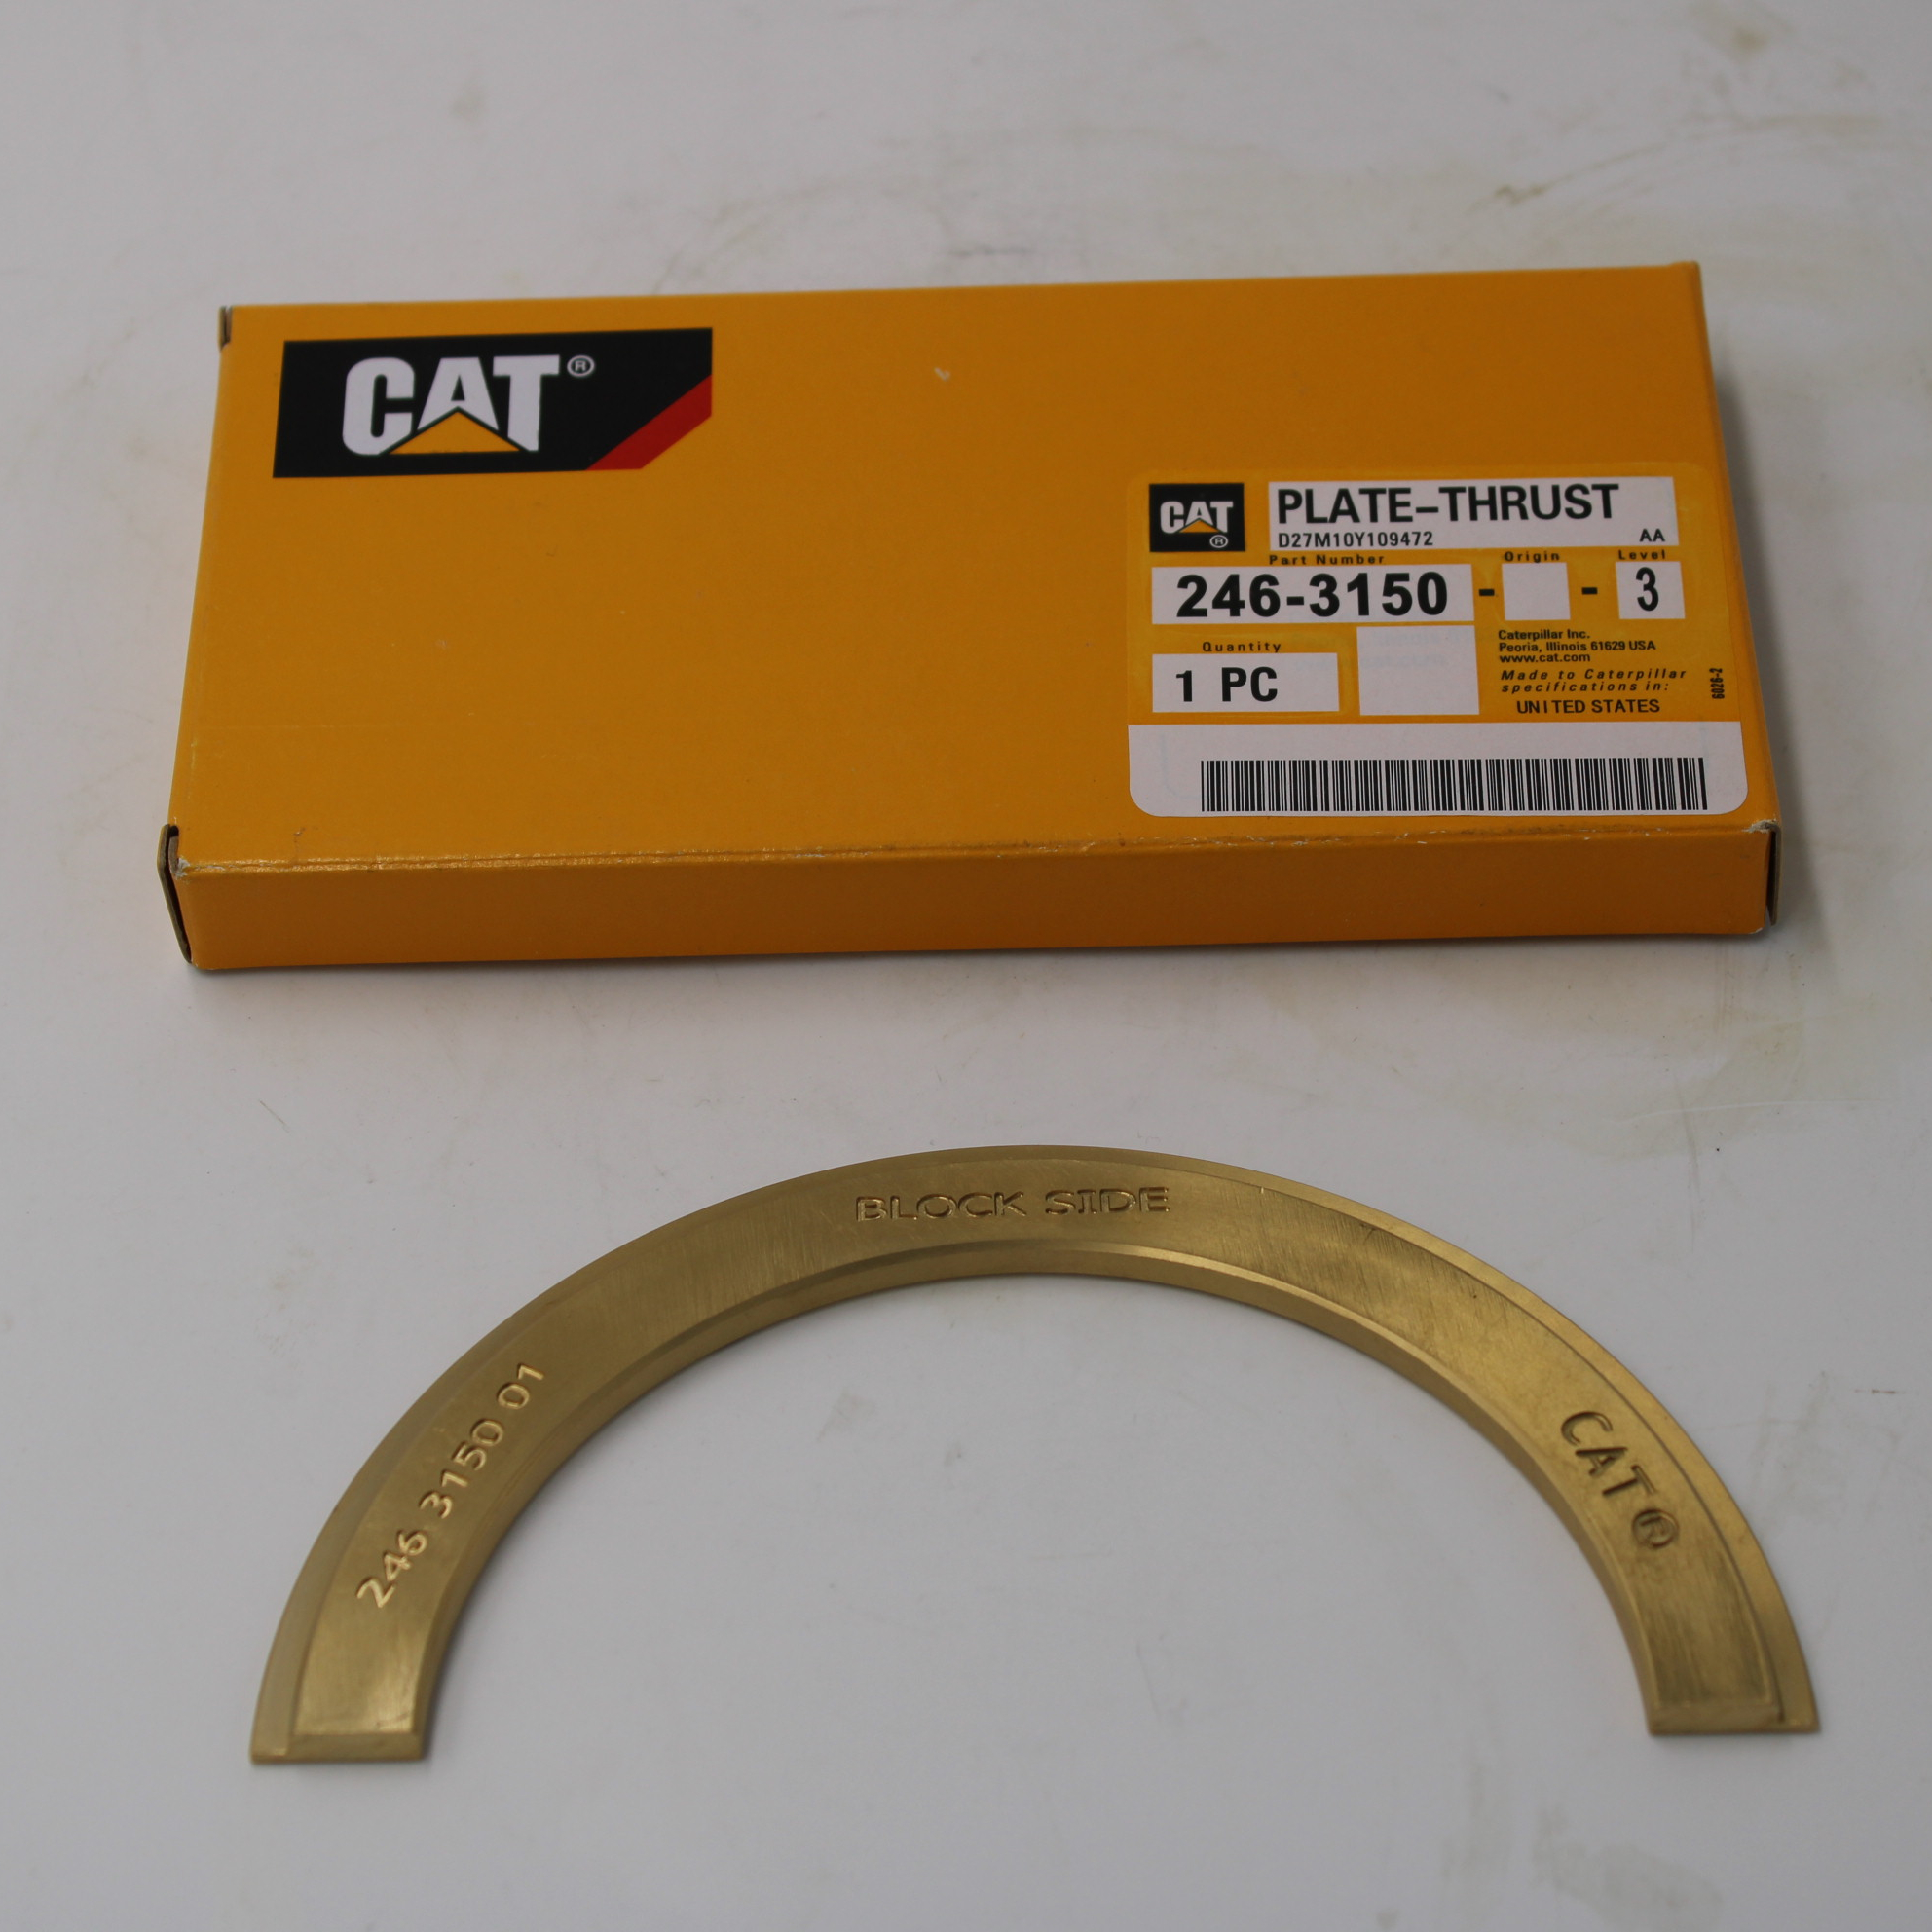 High quality cat 330D / 336d / 340D / 340d2l excavator C9 engine thrust plate 246-3150 